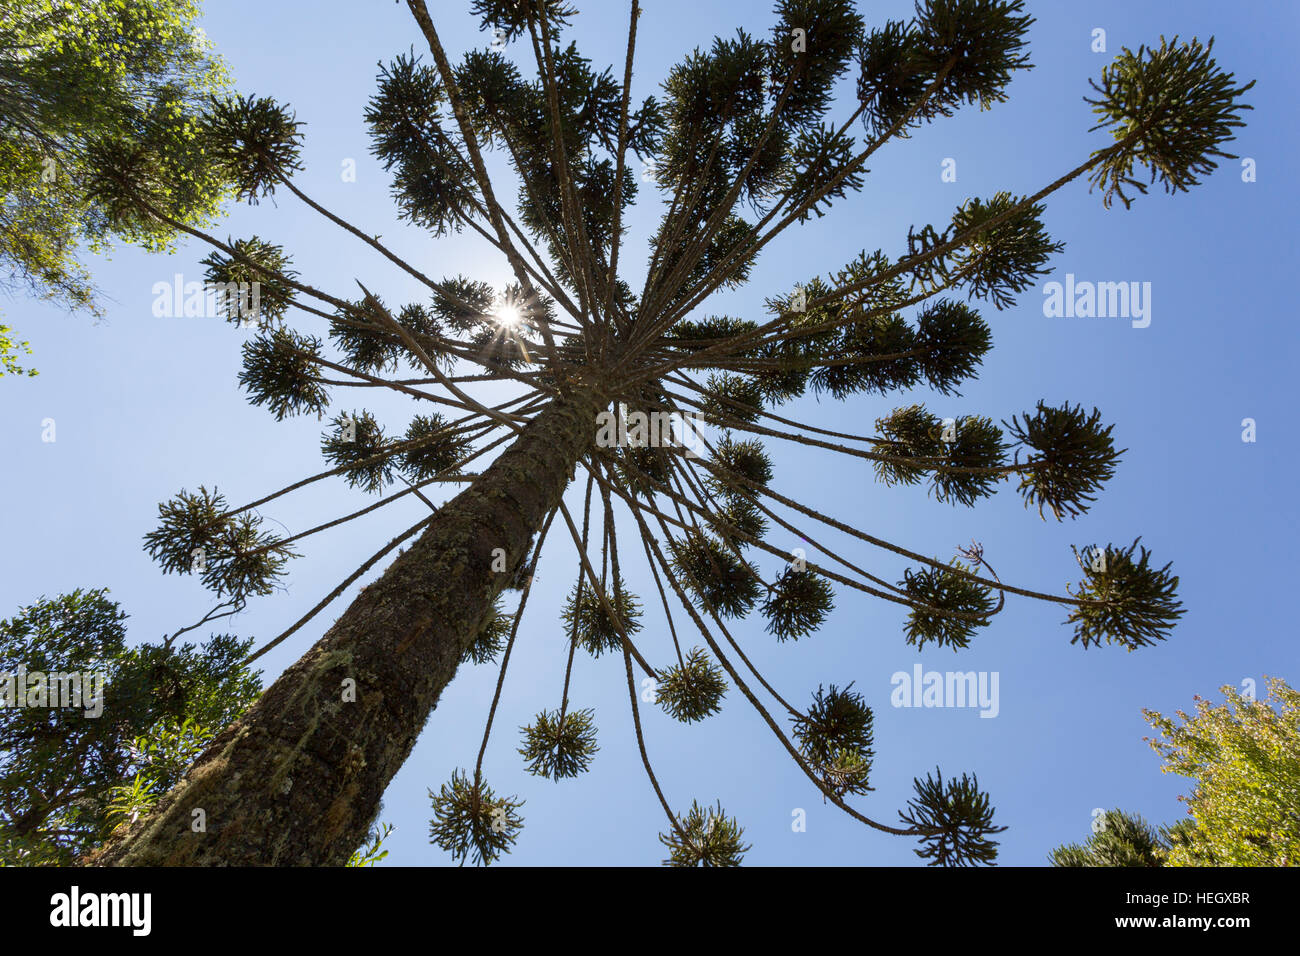 Brazilian pine (Araucaria angustifolia), a.k.a. parana pine, candelabra tree (pinheiro brasileiro, parana), treetop, Campos do Jordao, SP, Brazil Stock Photo